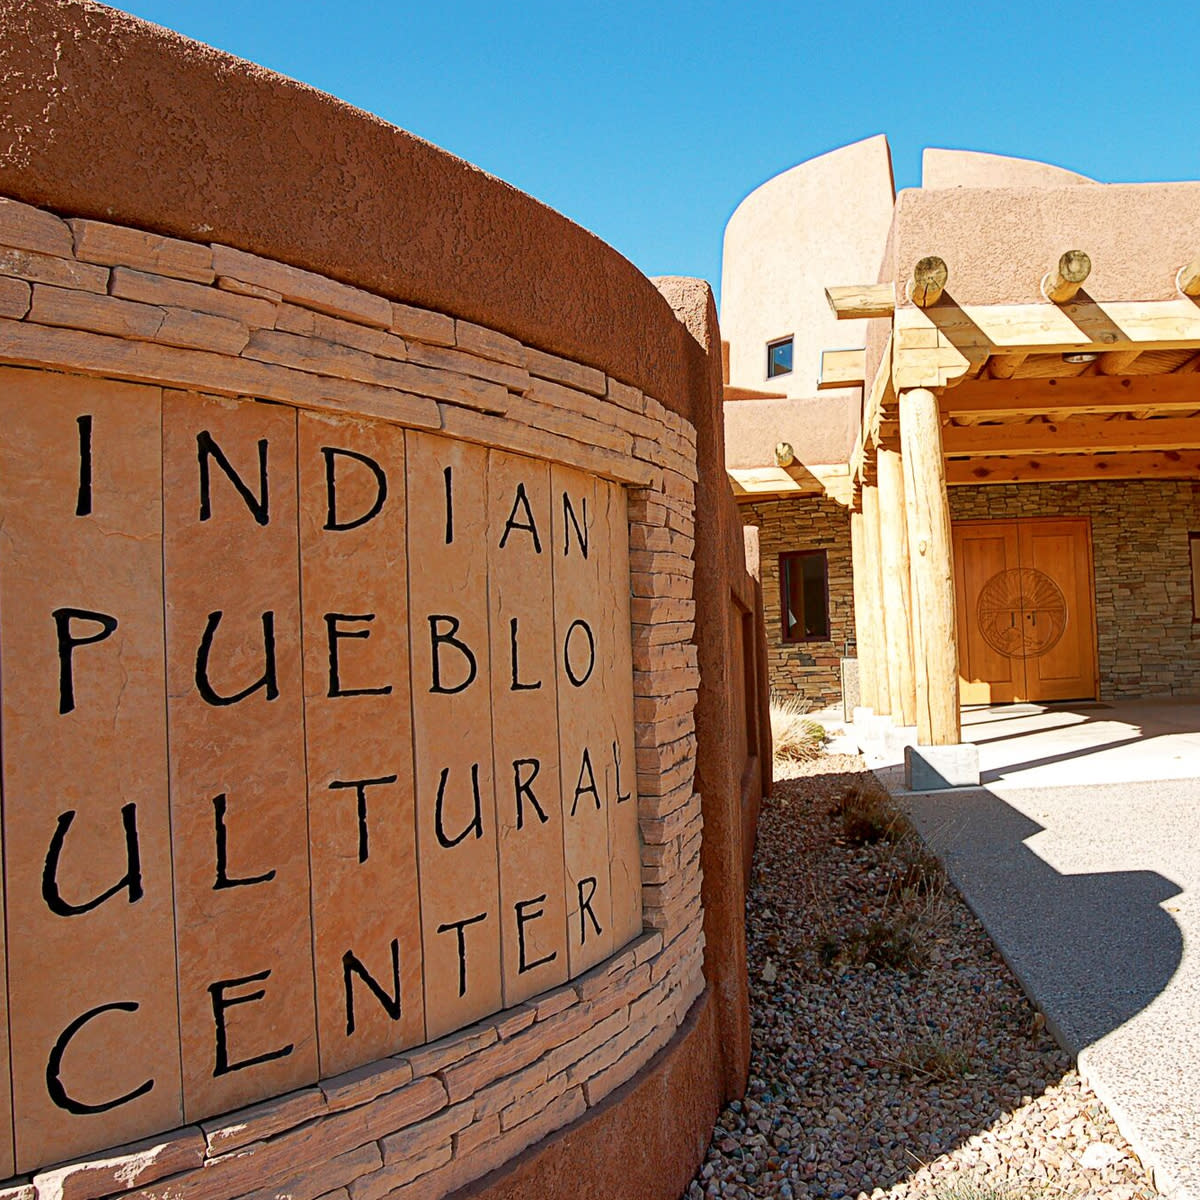 Indian Pueblo Cultural Center of Albuquerque